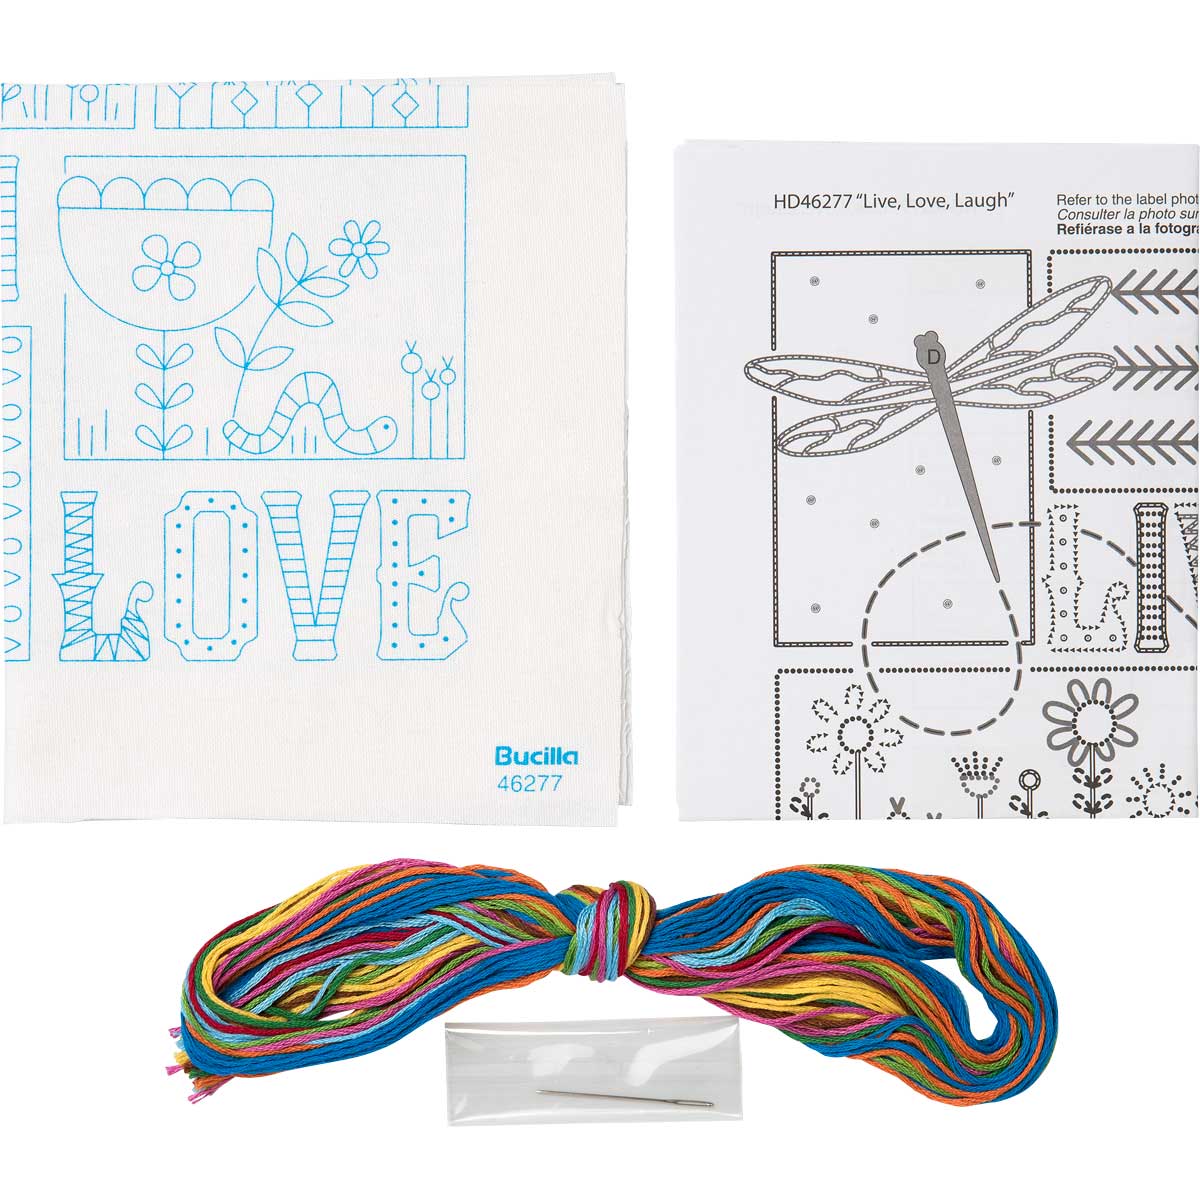 Bucilla ® Stamped Embroidery - Picture Kits - Live, Love, Laugh - WM46277E